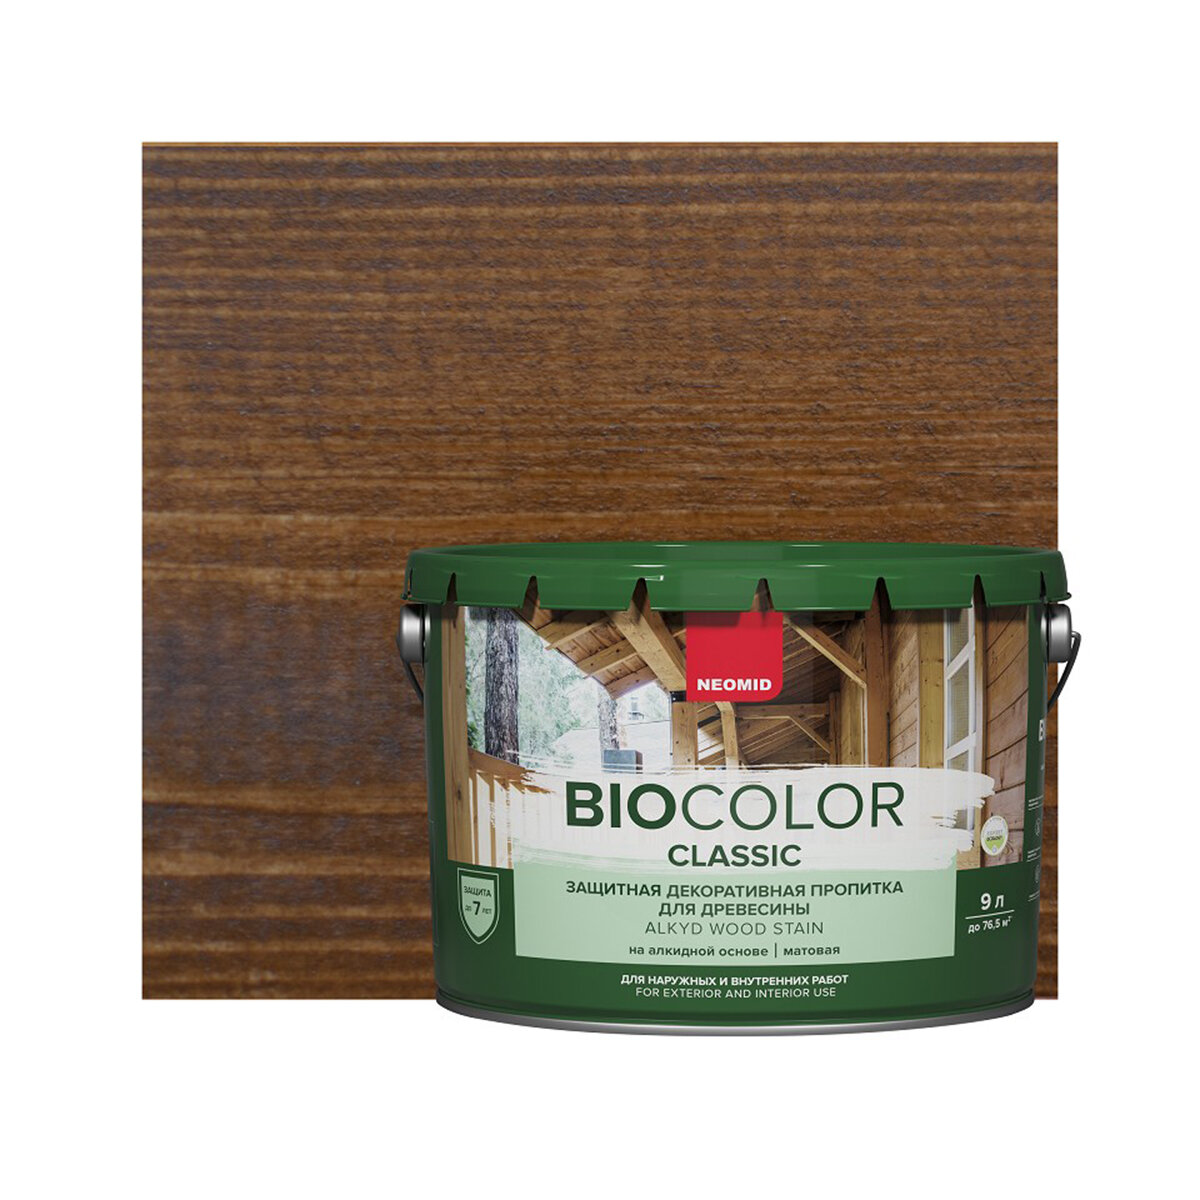 NEOMID пропитка защитная декоративная пропитка для древесины Bio Color Classic